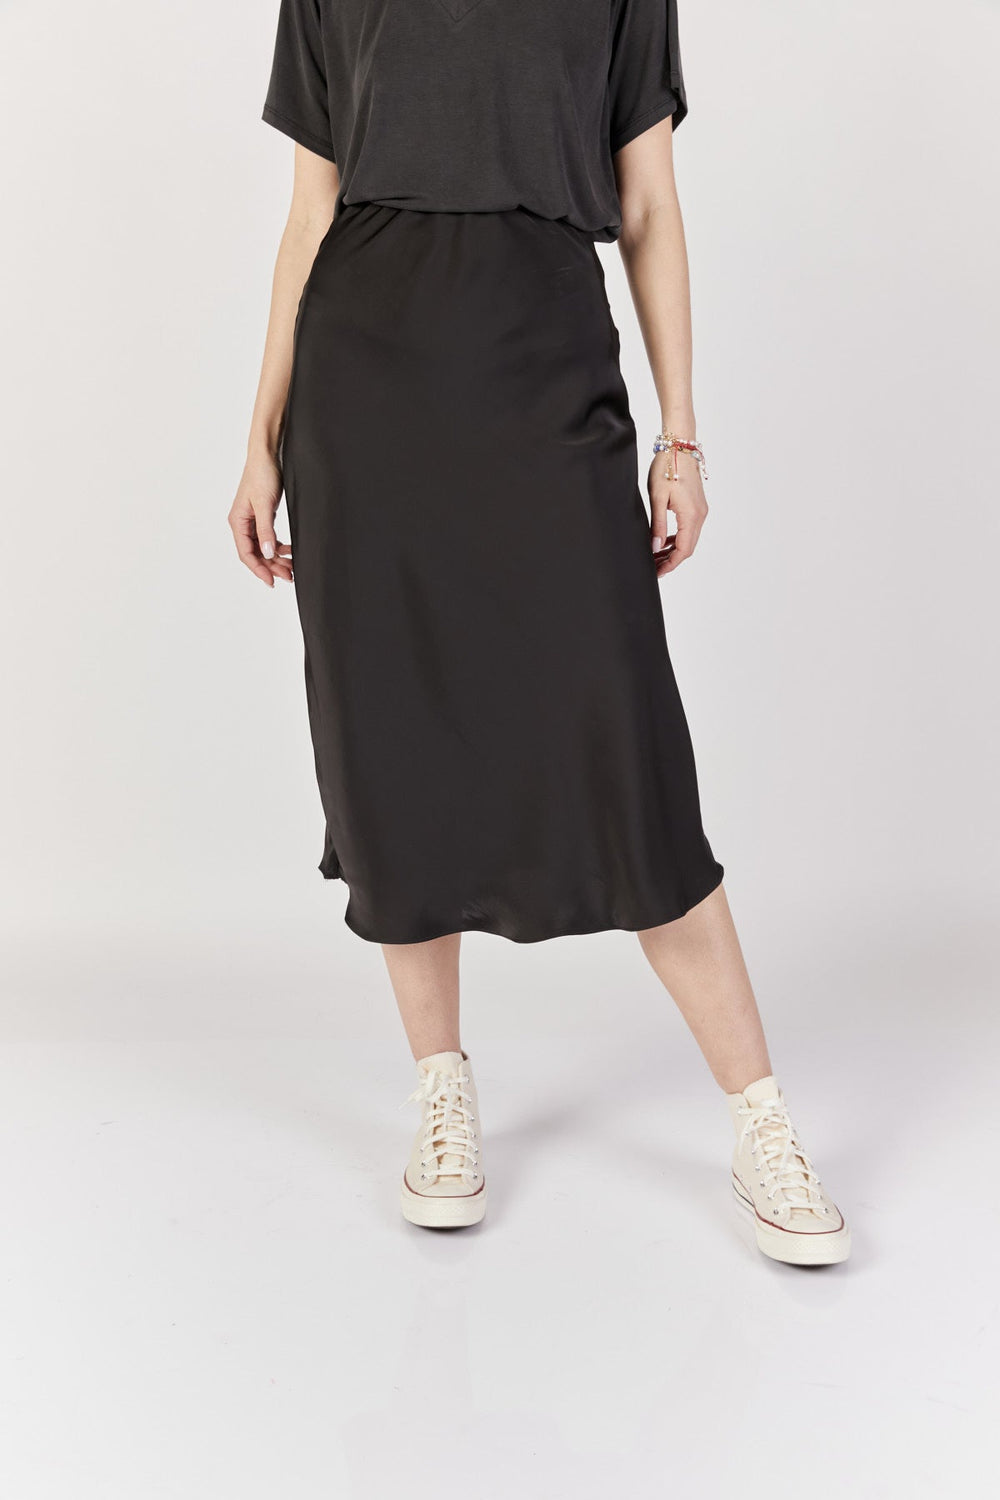 חצאית מידי בלאנק בצבע שחור - Razili Studio